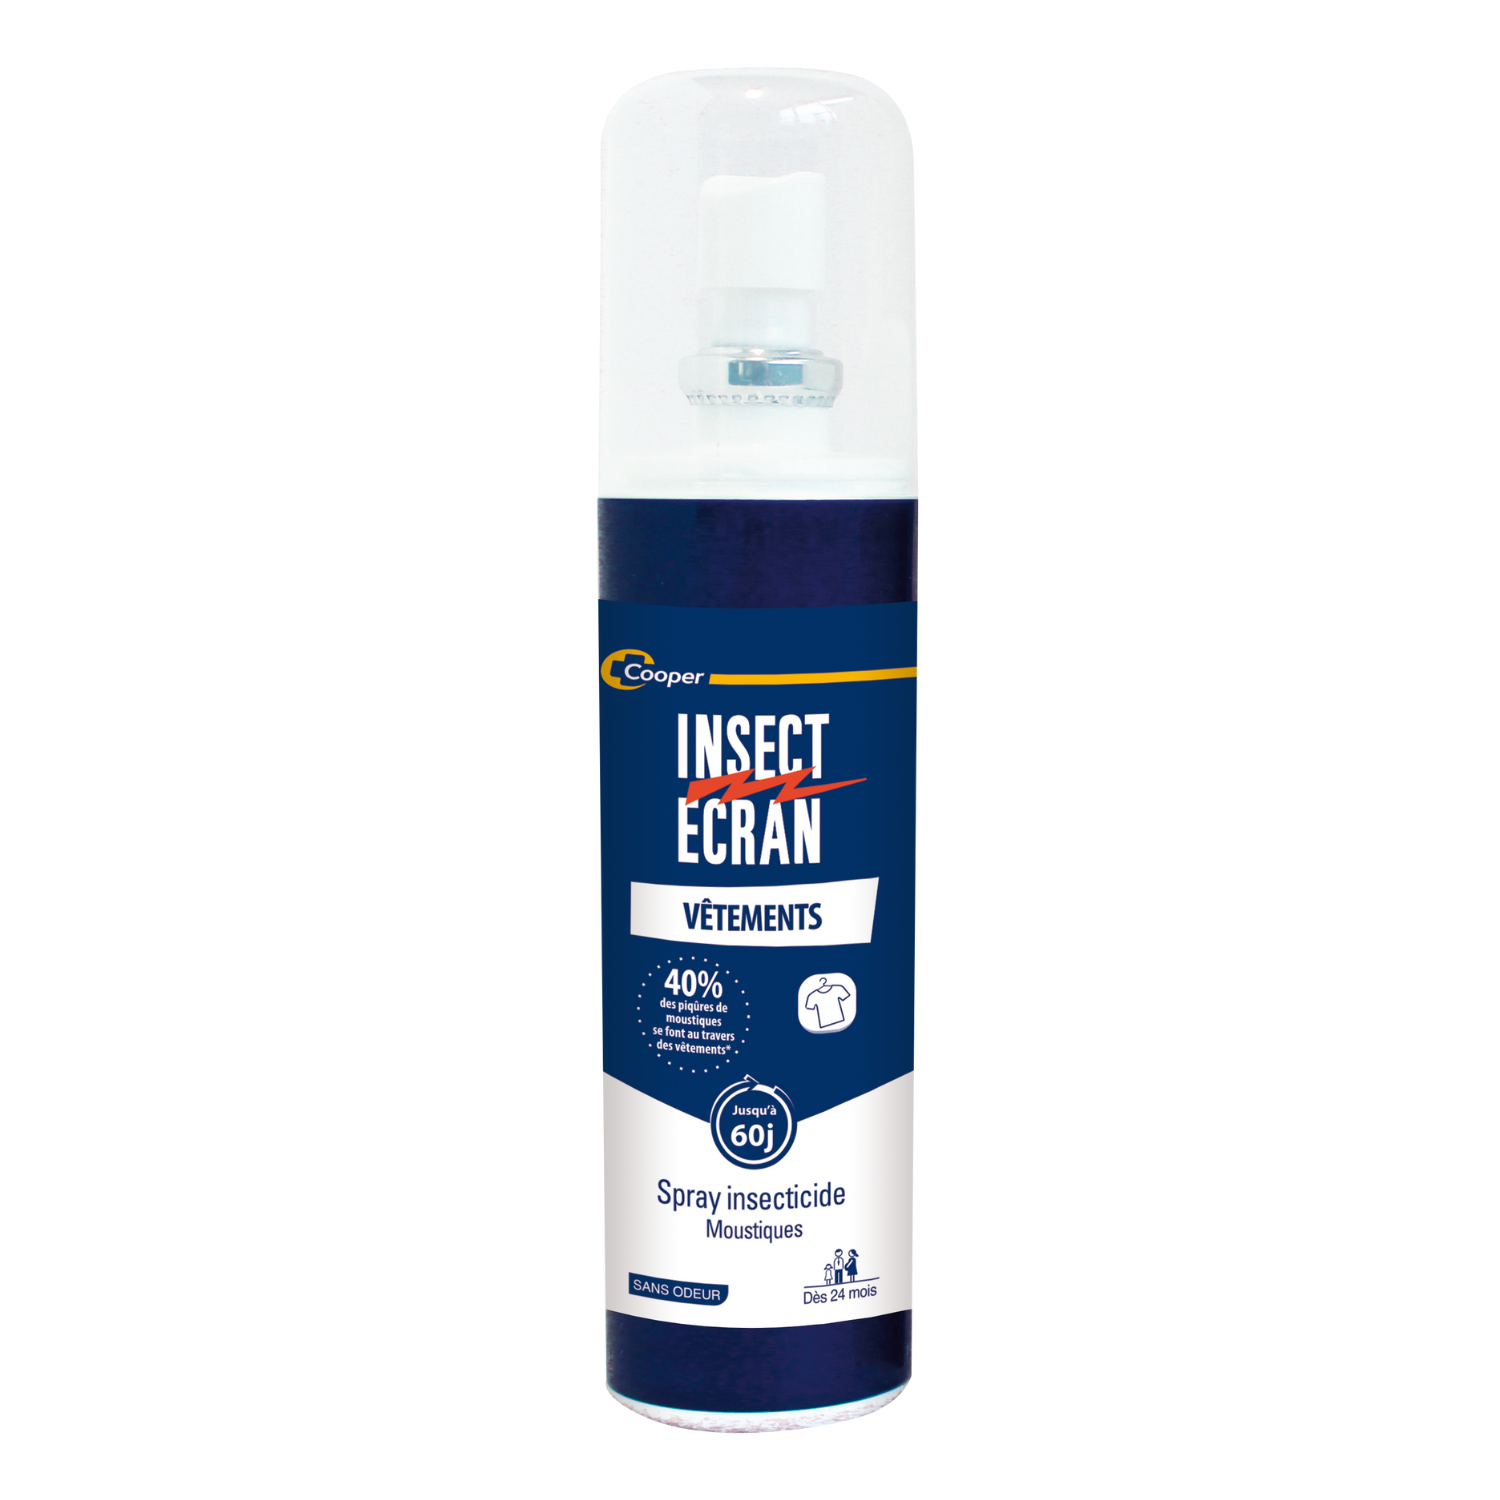 Anti moustique Spray 100ml, vente au meilleur prix